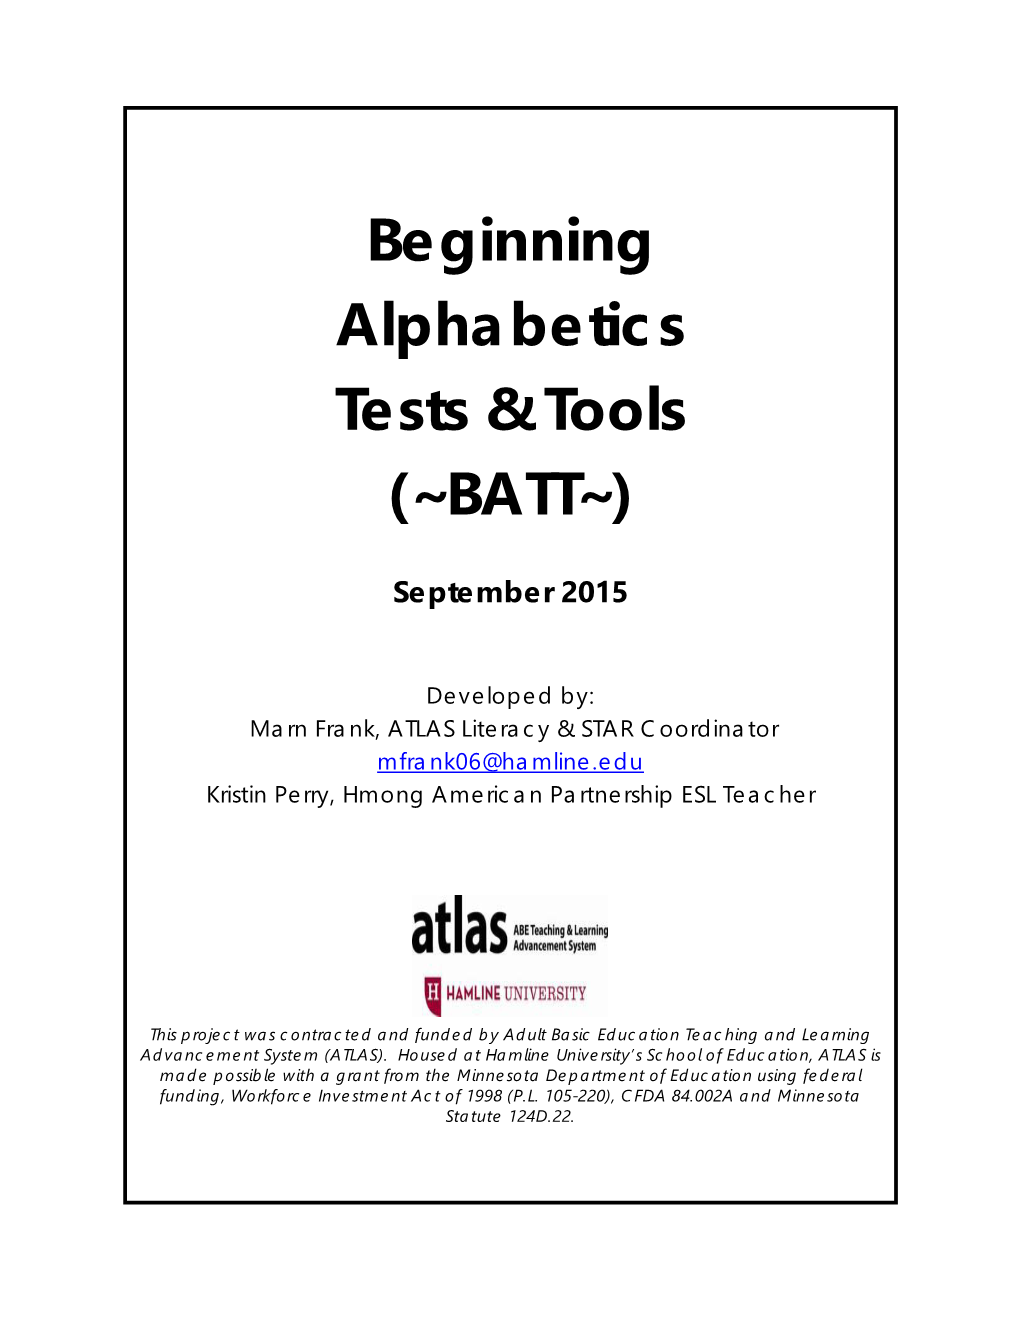 Beginning Alphabetics Tests & Tools (~BATT~)